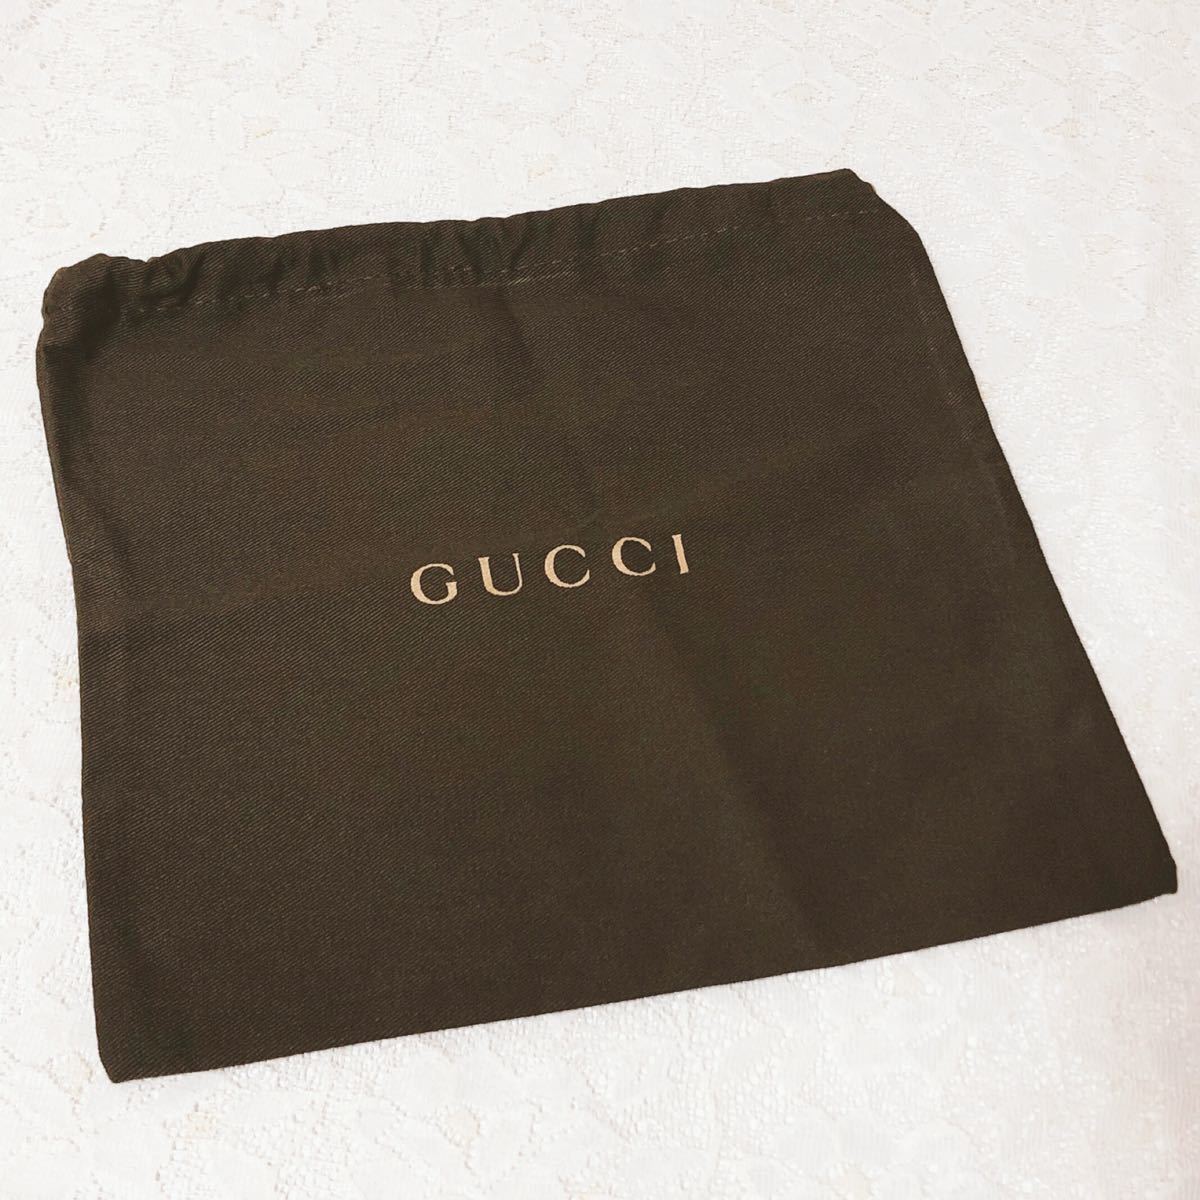 グッチ「GUCCI」小物用保存袋旧型（3221) 正規品付属品内袋布袋巾着袋